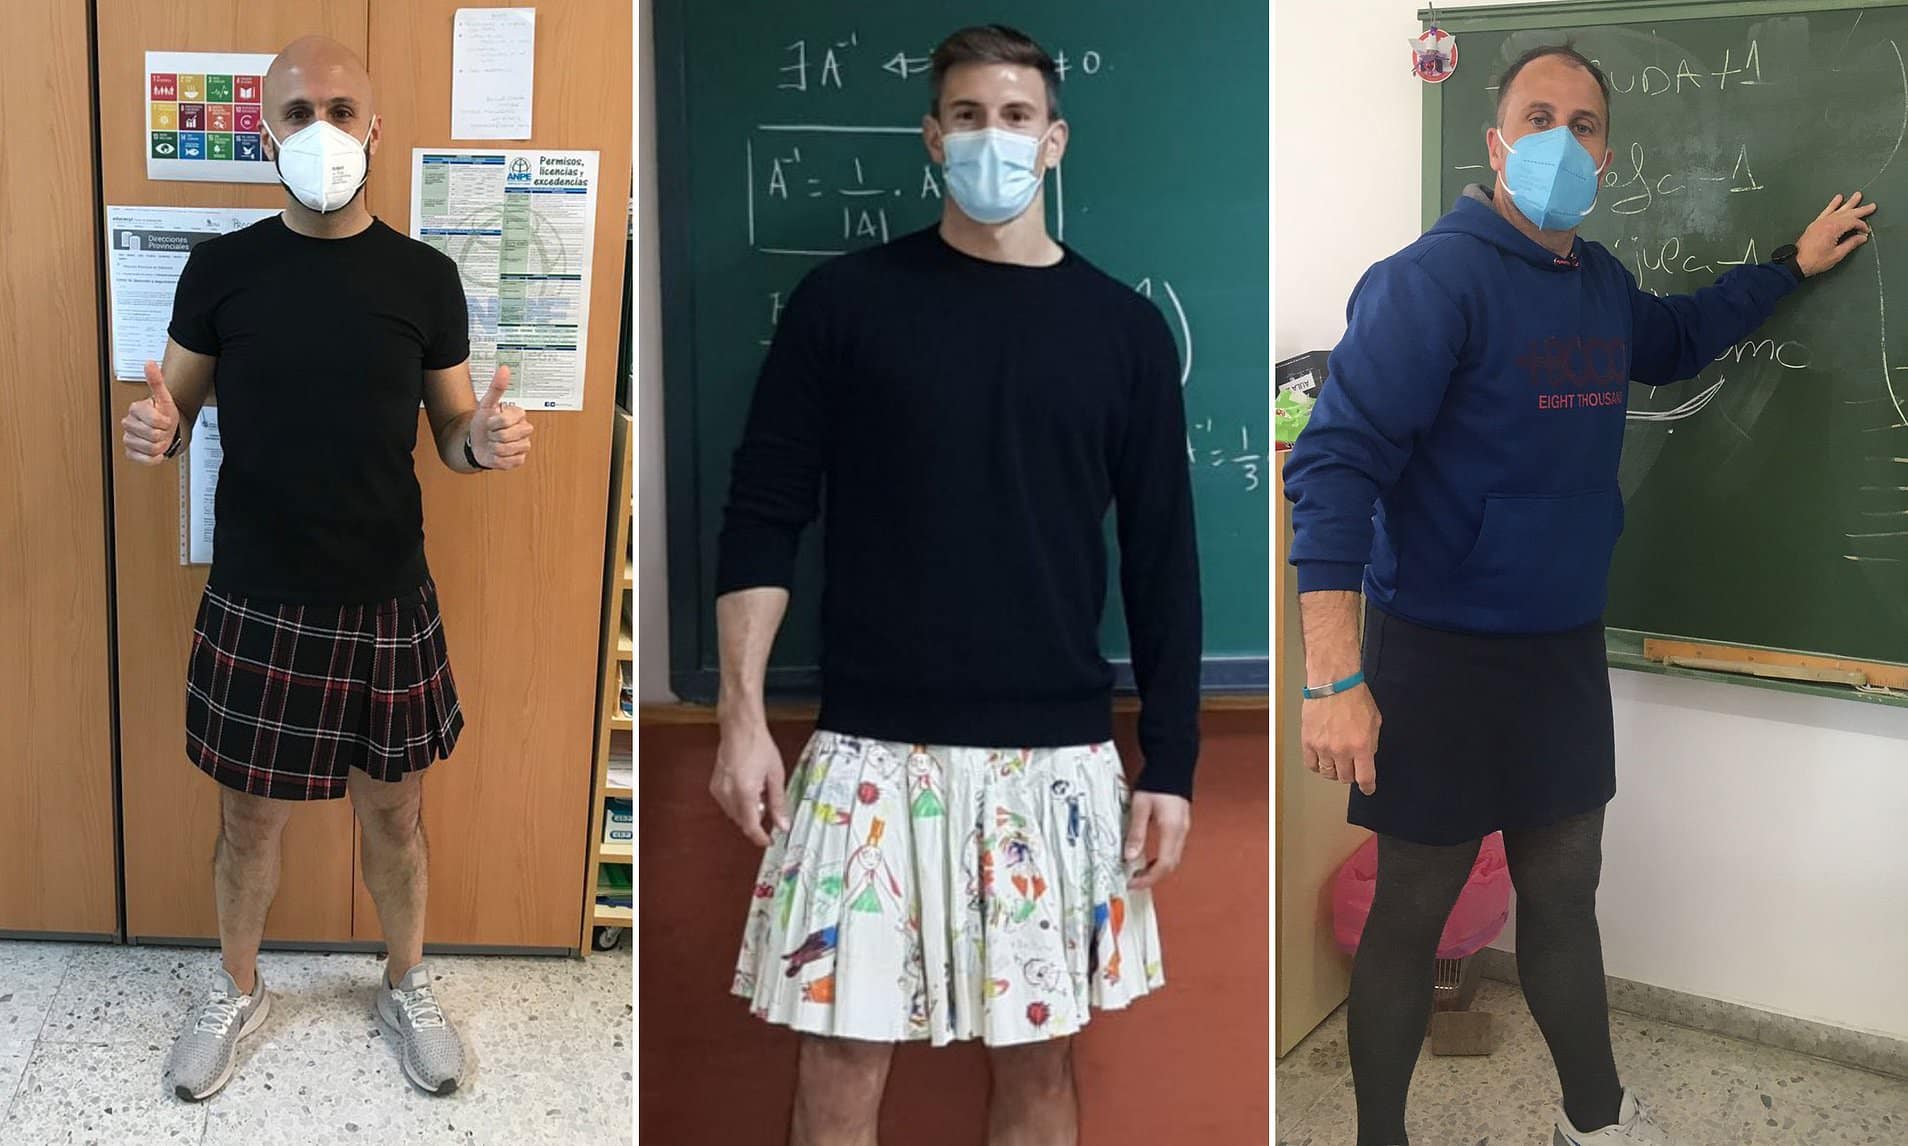 Parità dei fessi. In Spagna i docenti indossano la gonna. Obiettivo: affermare libertà di espressione e uguaglianza